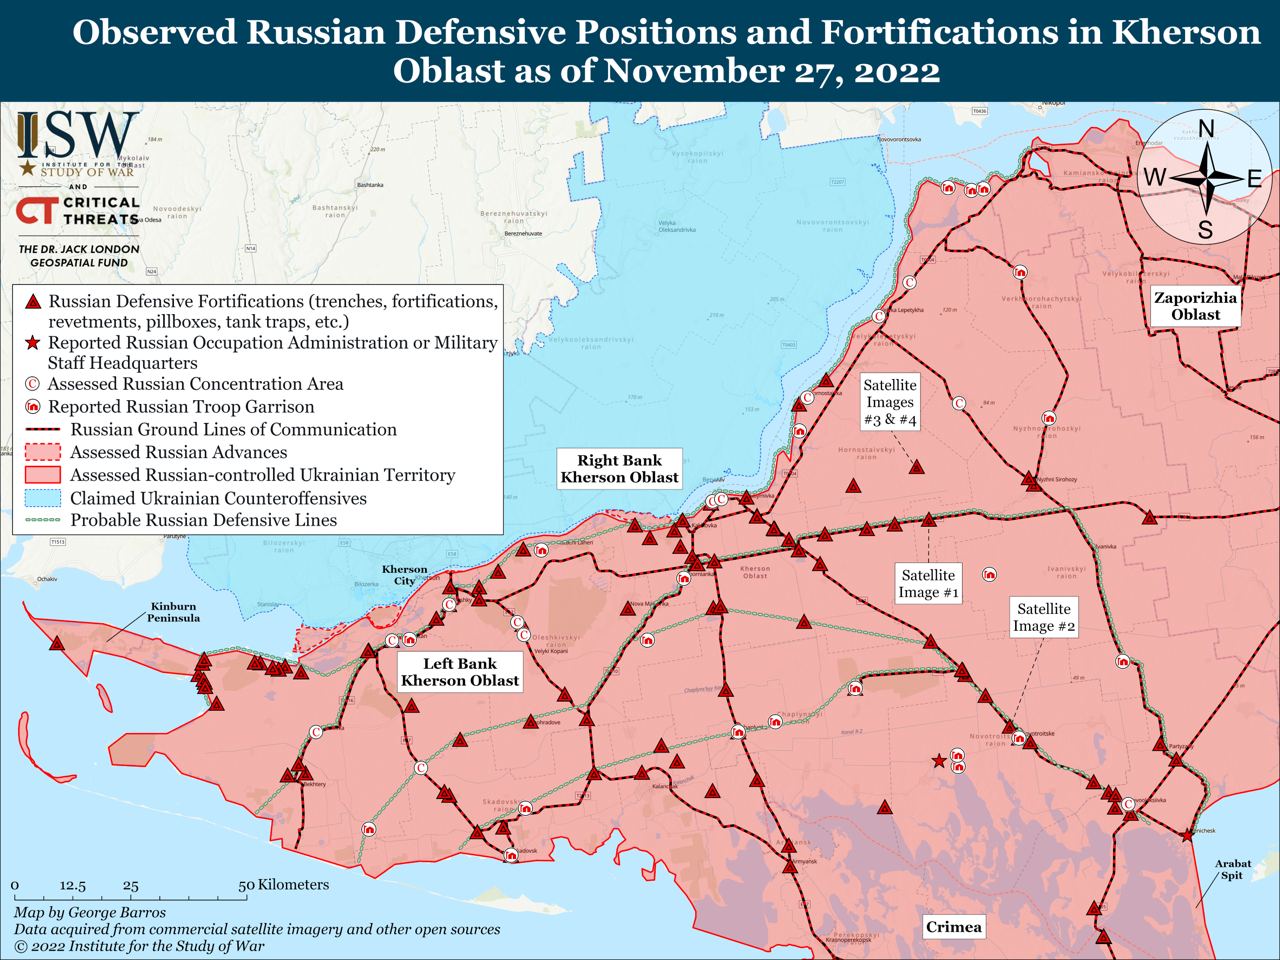 Российская армия укрепляет свои позиции вдоль критически важных объектов на востоке Херсонской области на случай возможного контрнаступления украинских войск в будущем, - ISW